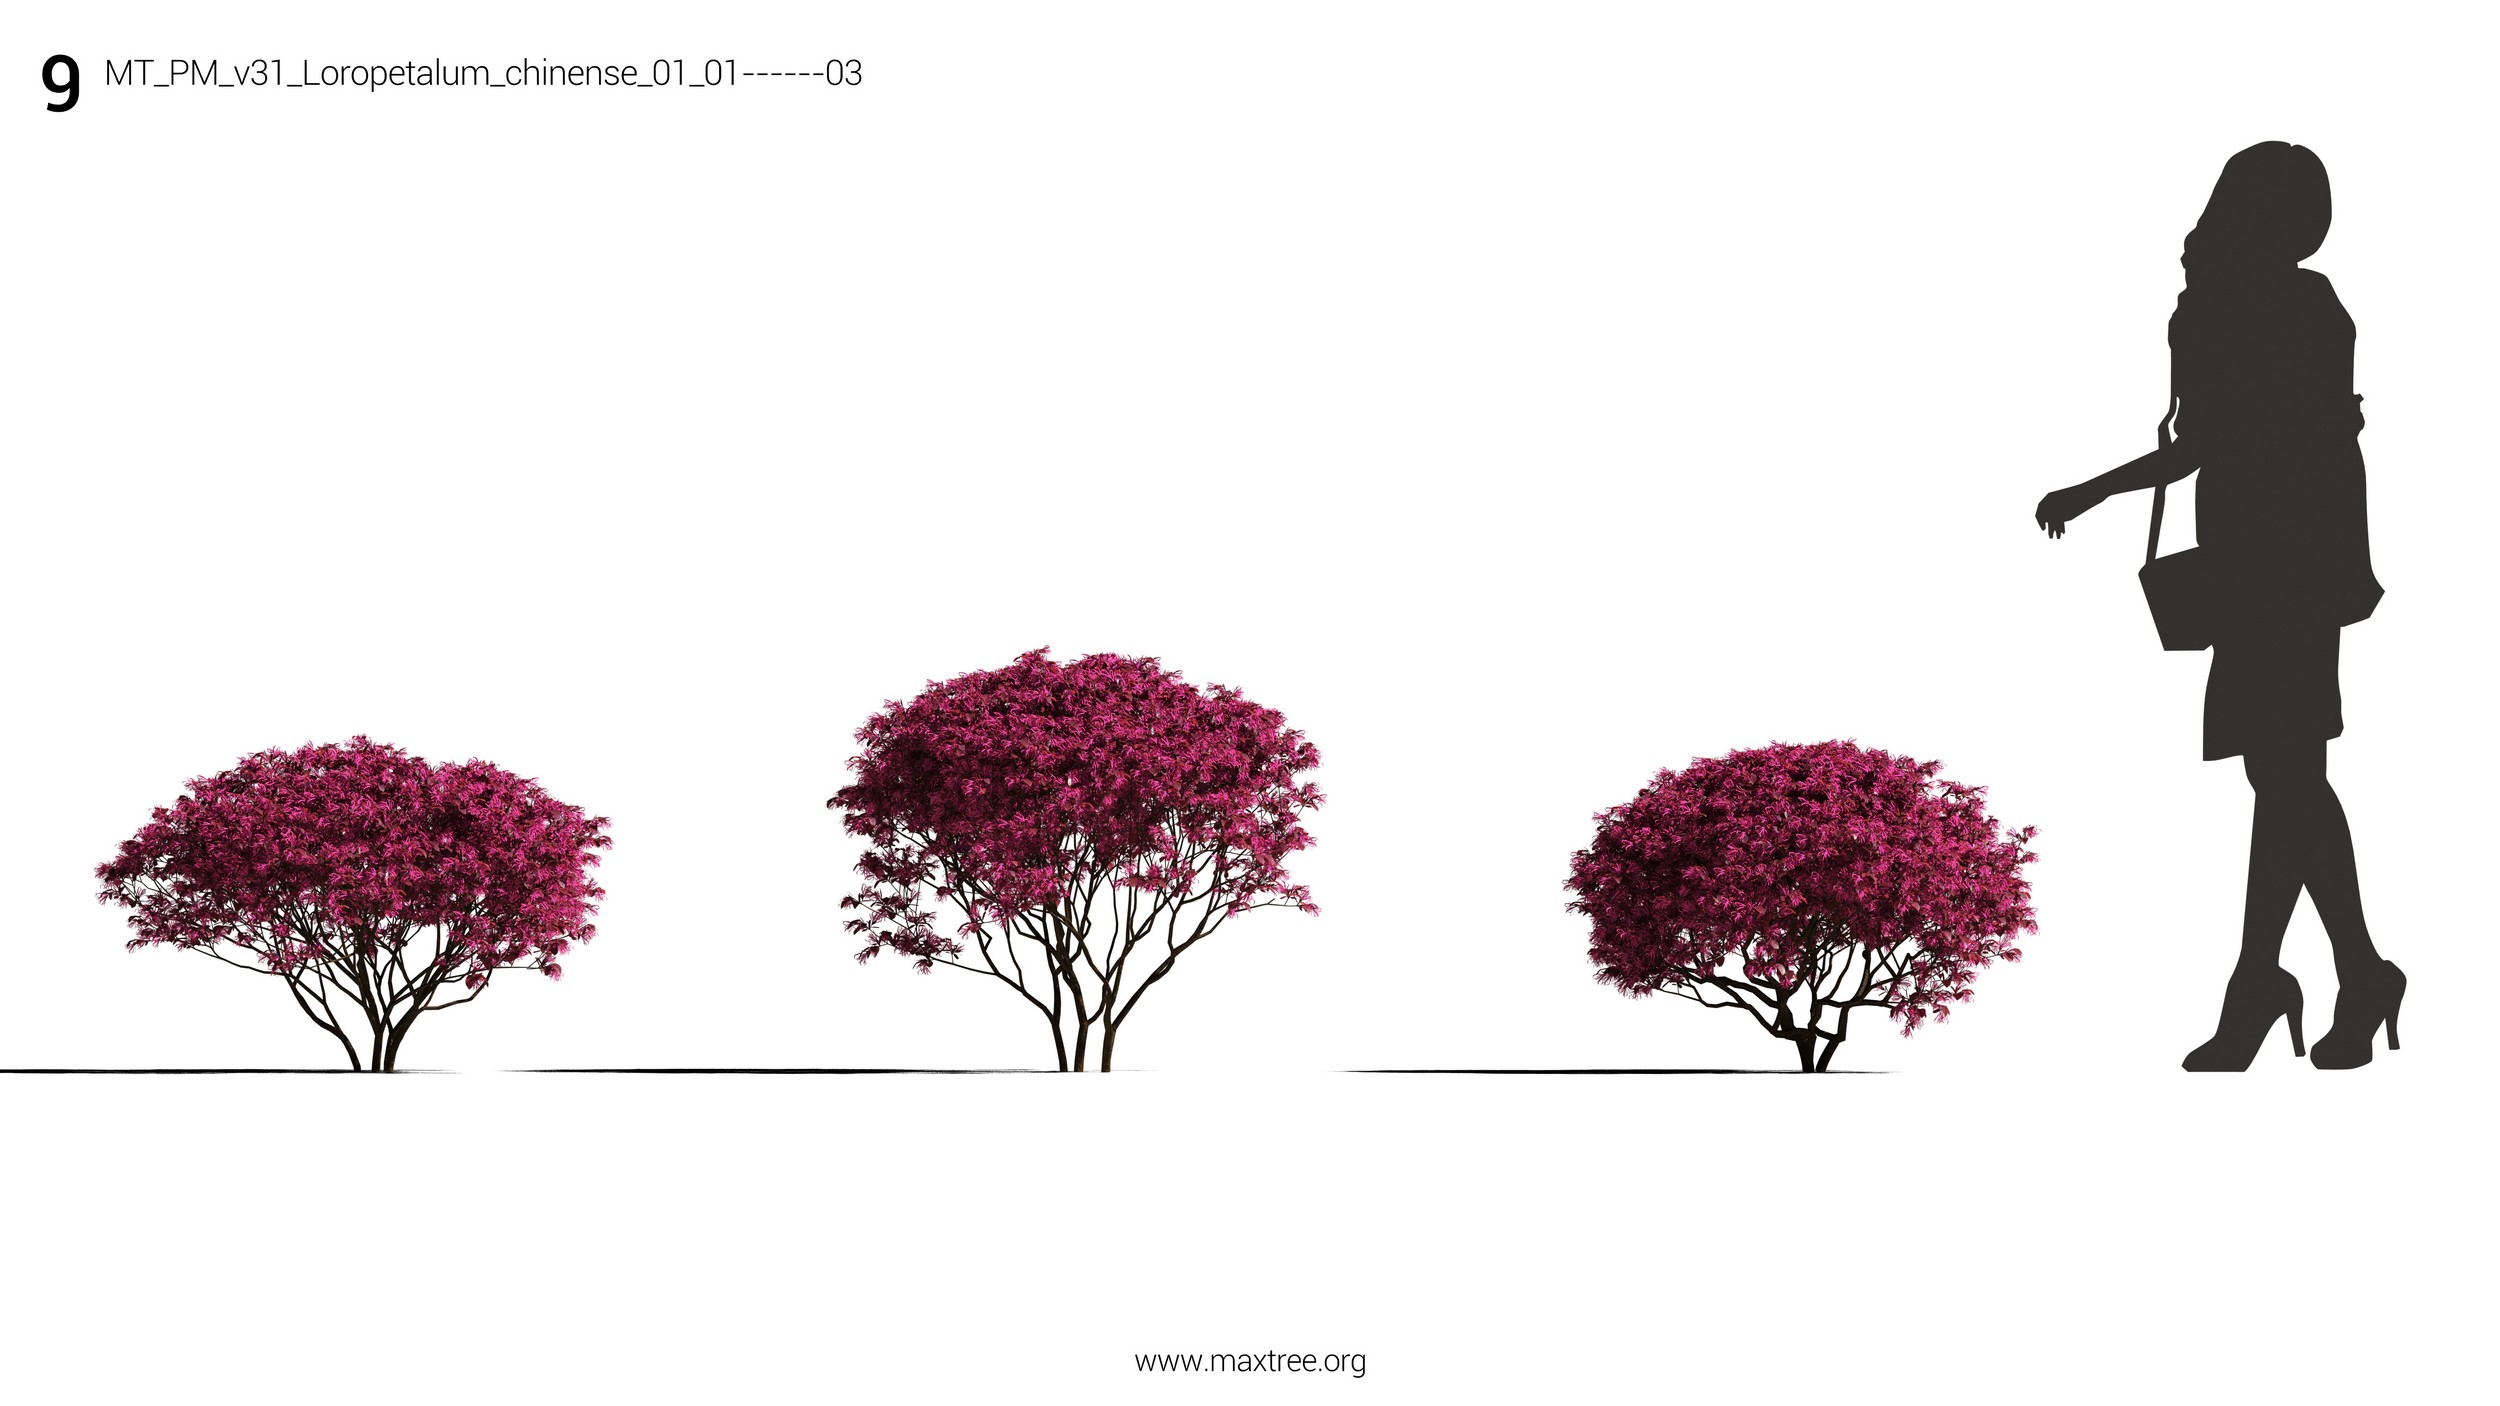 دانلود مدل سه بعدی درخت و درختچه - 15